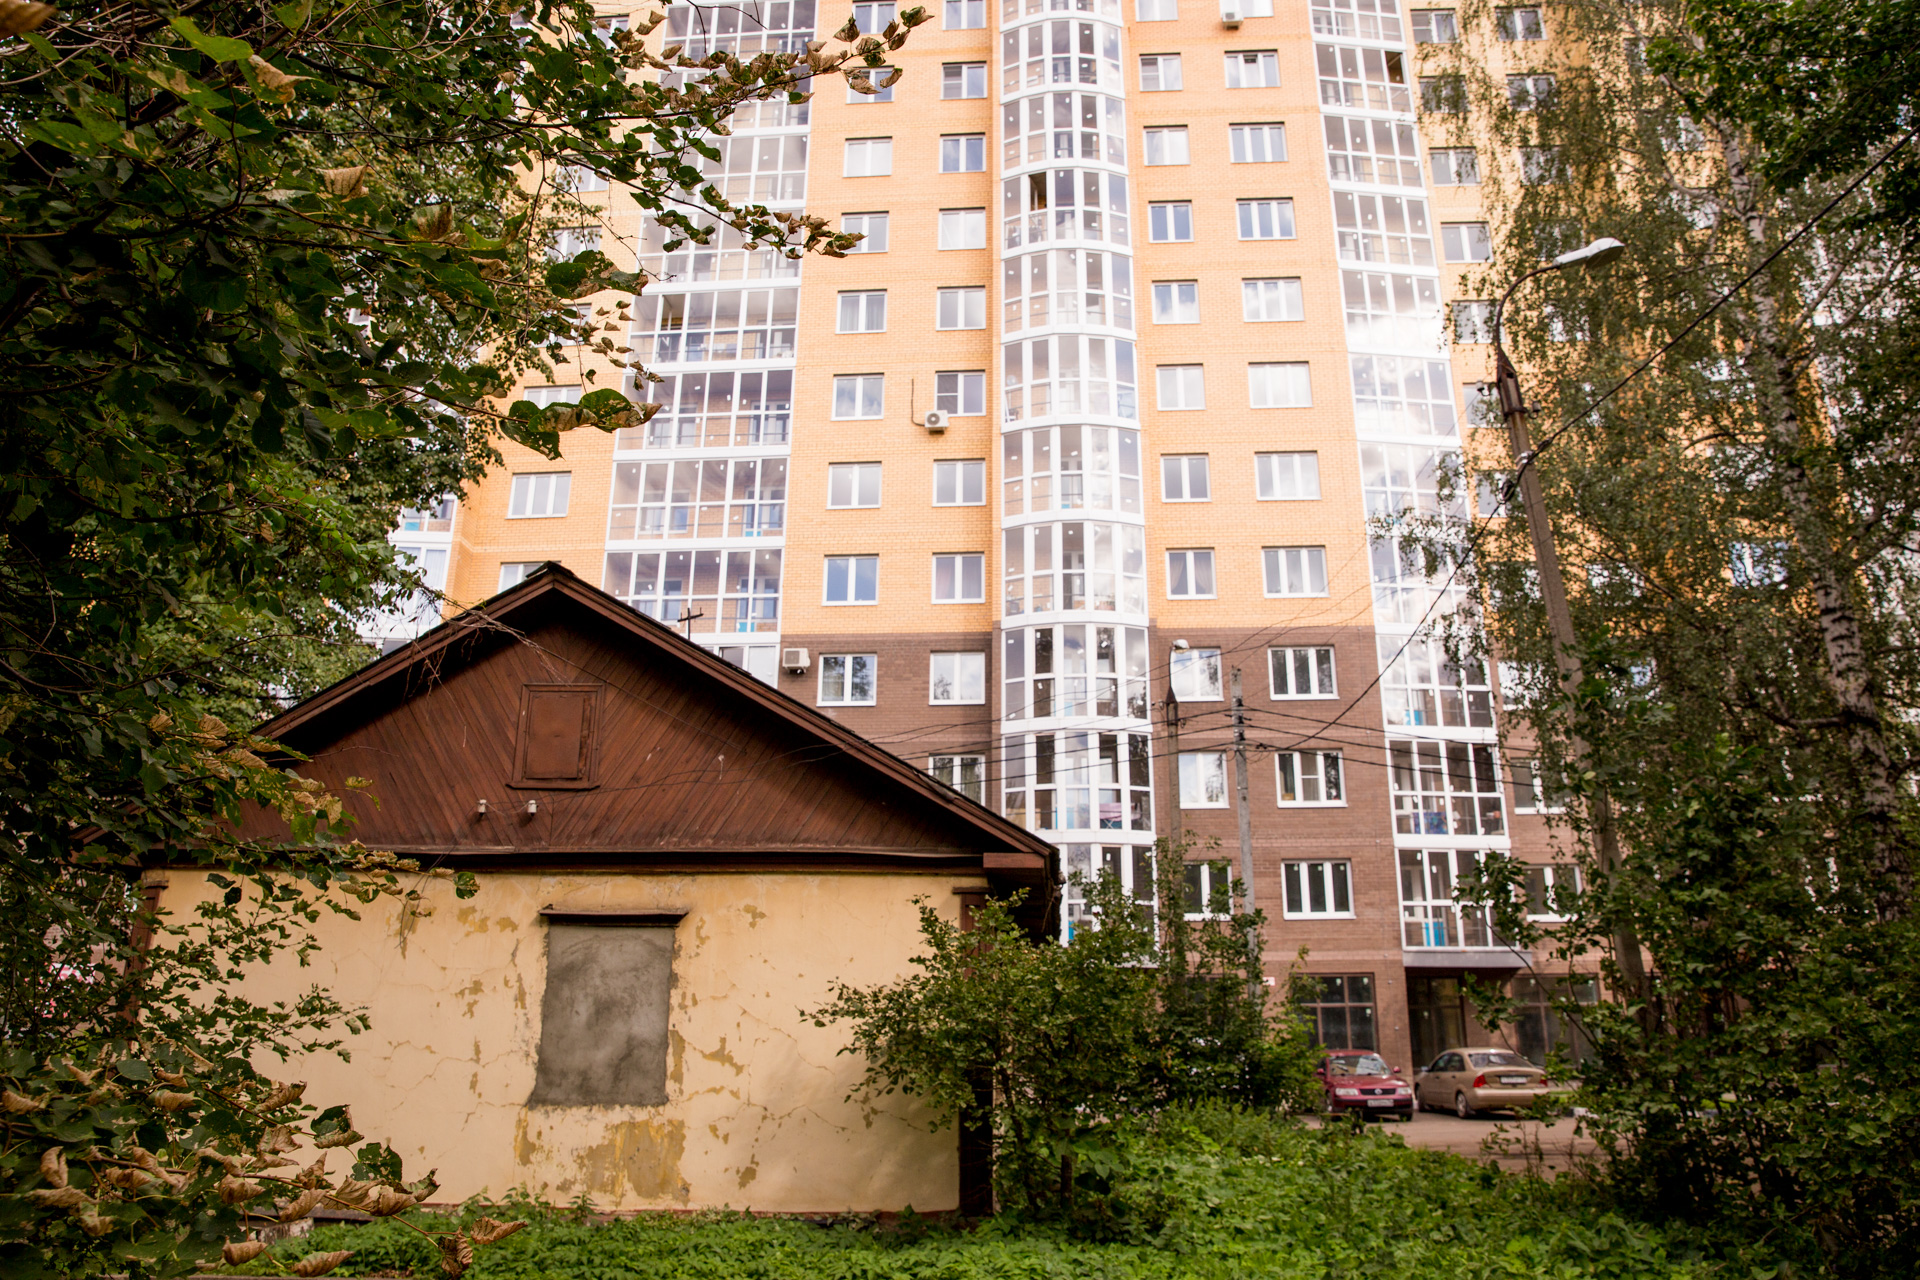 Три домишка на границе центра Ярославля. Как живёт мини-деревня среди многоэтажек